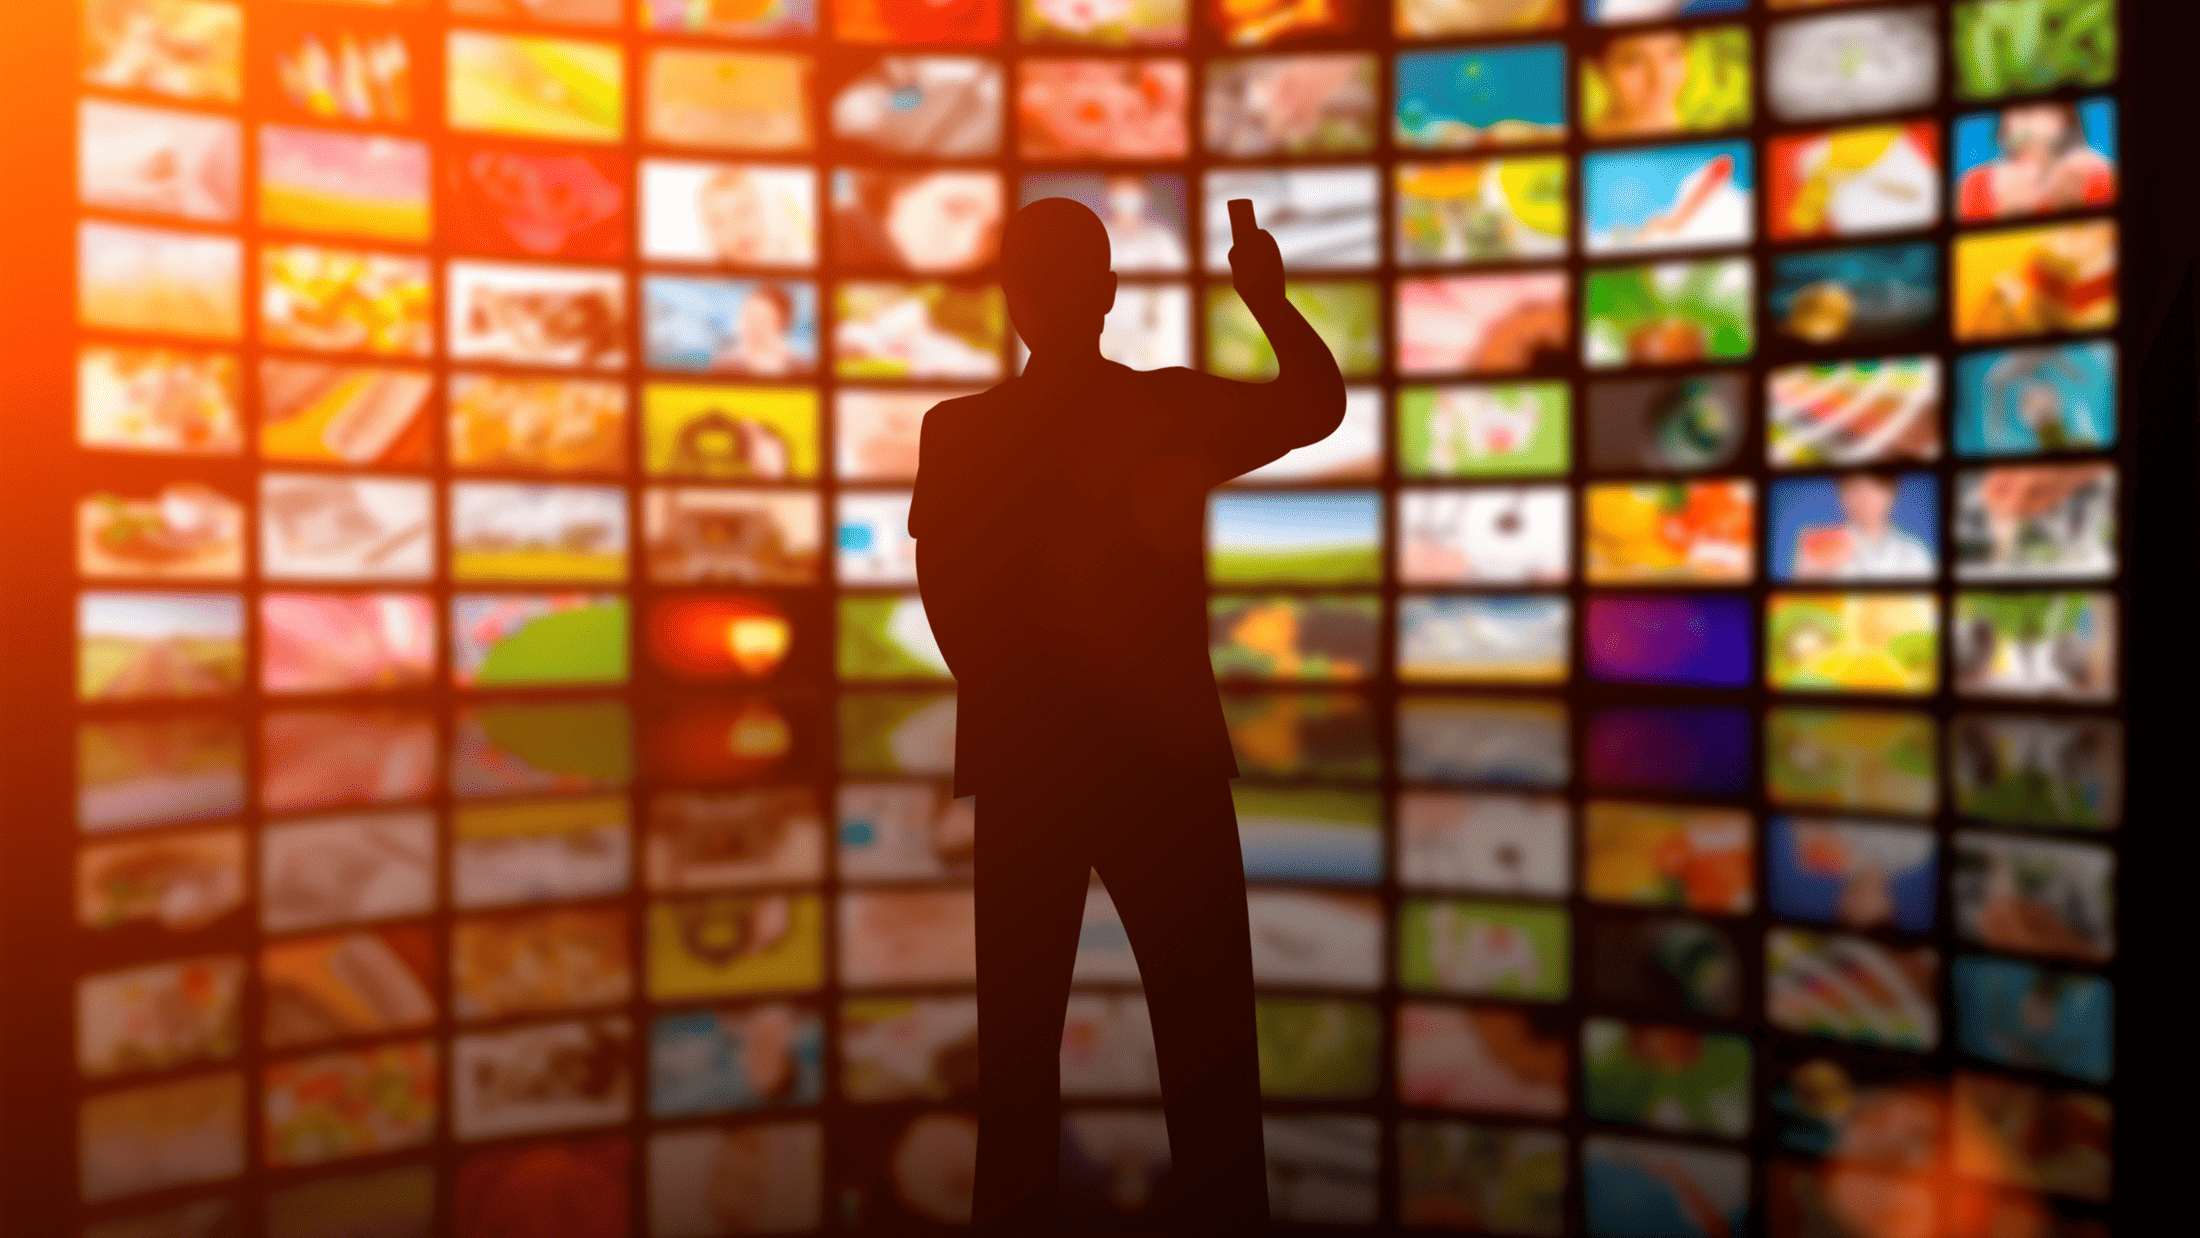 ストリーミングサービスの台頭とテレビ視聴の選択肢の増加